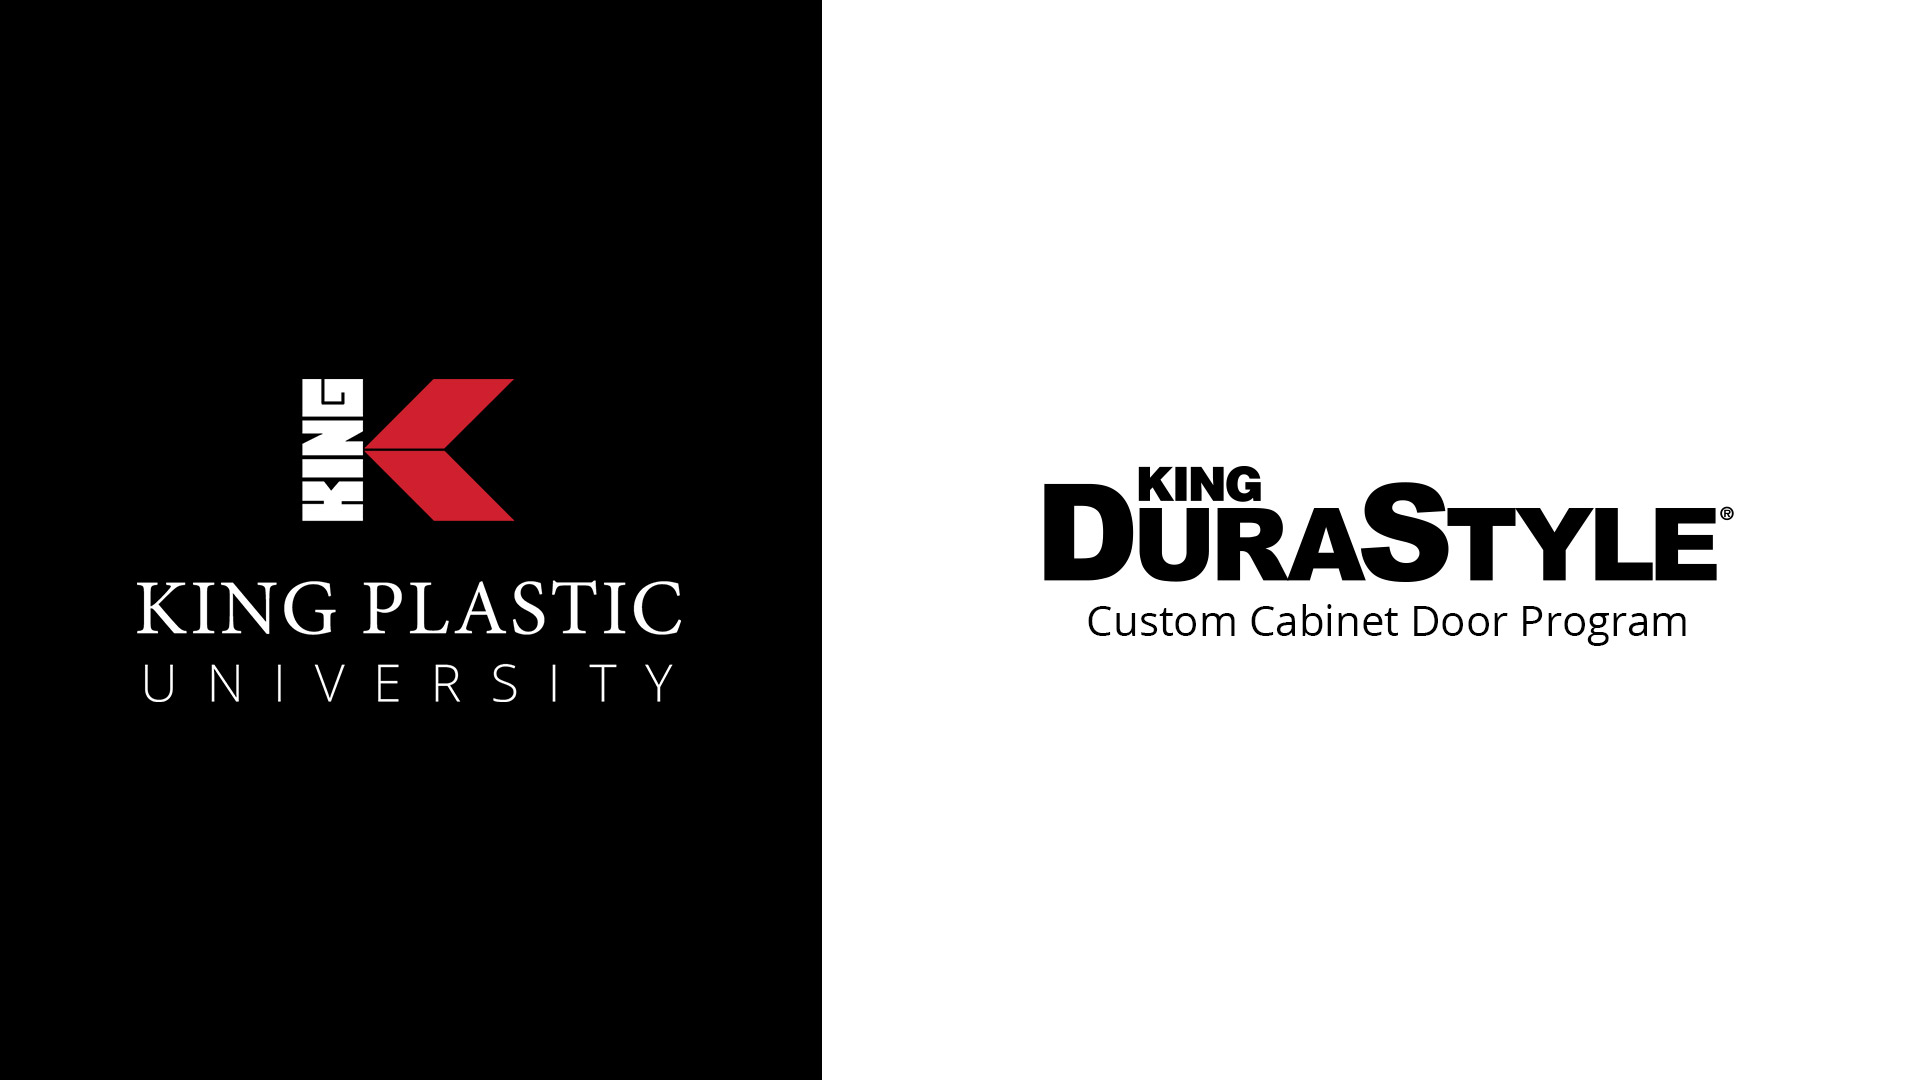 King DuraStyle® Custom Cabinet Door Program